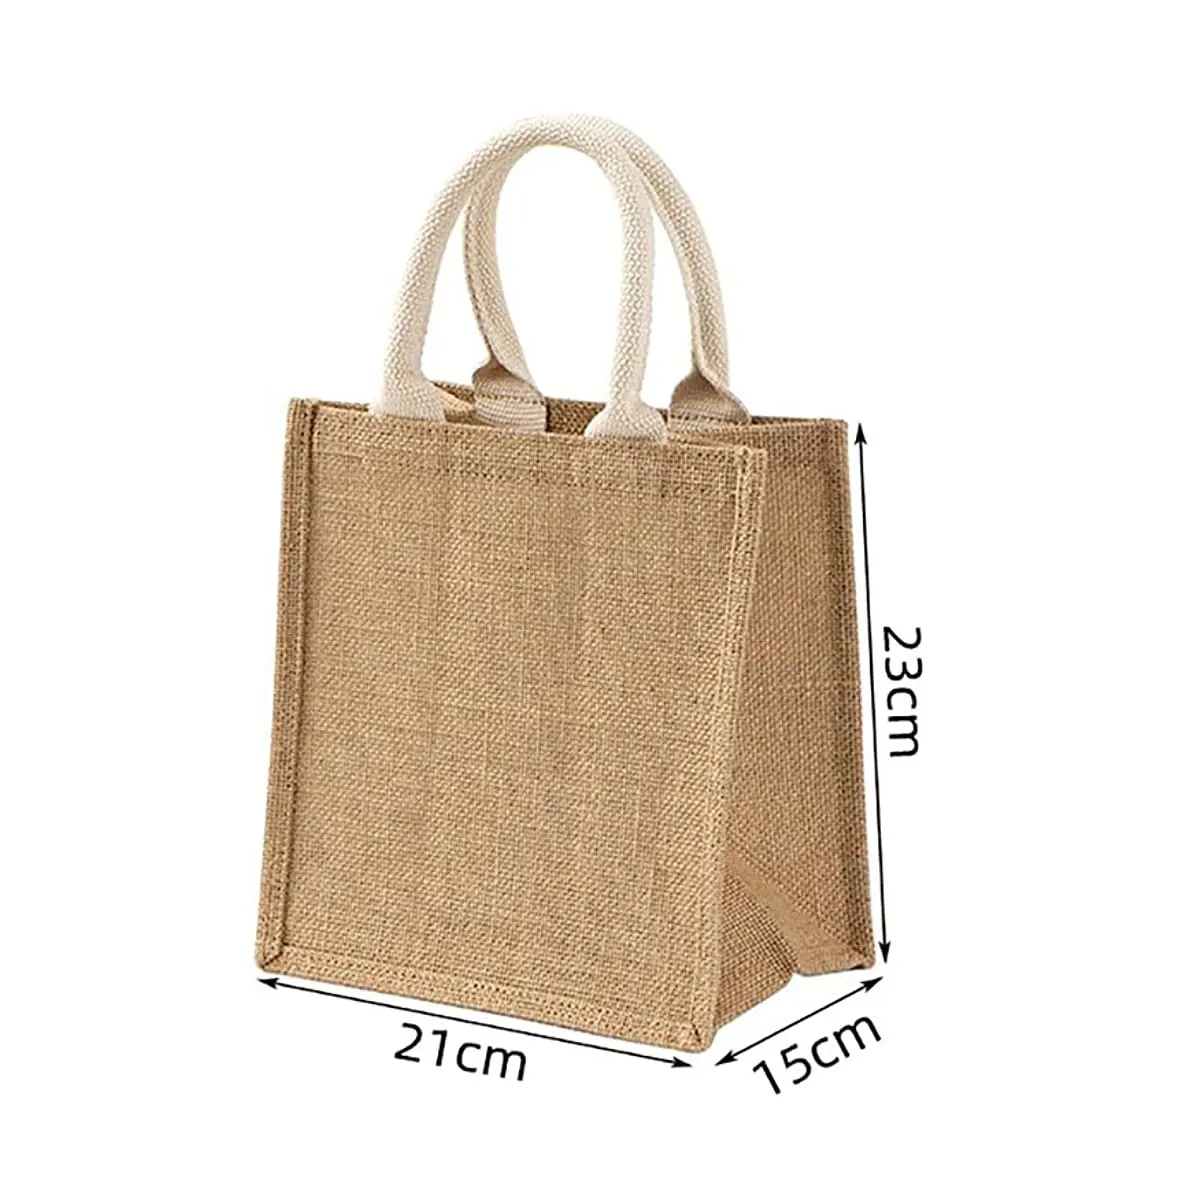 空白の再利用可能な食料品黄麻布ジュートギフトショッピングトートバッグ防水内側に白い綿のハンドルが付いた高品質のジュートバッグ